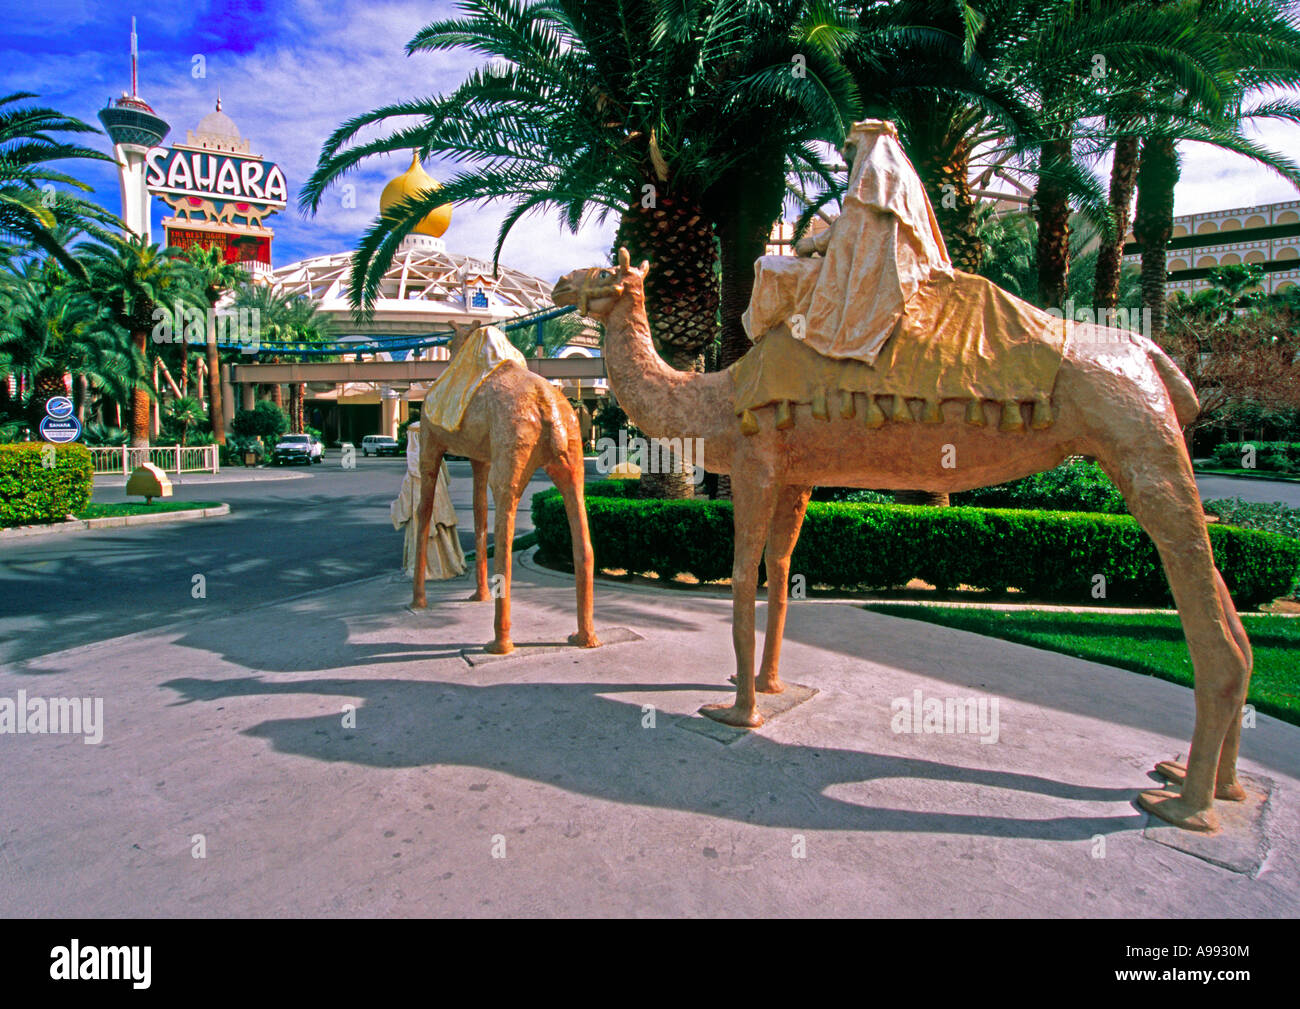 Sahara casino à Las Vegas, Nevada, USA Banque D'Images